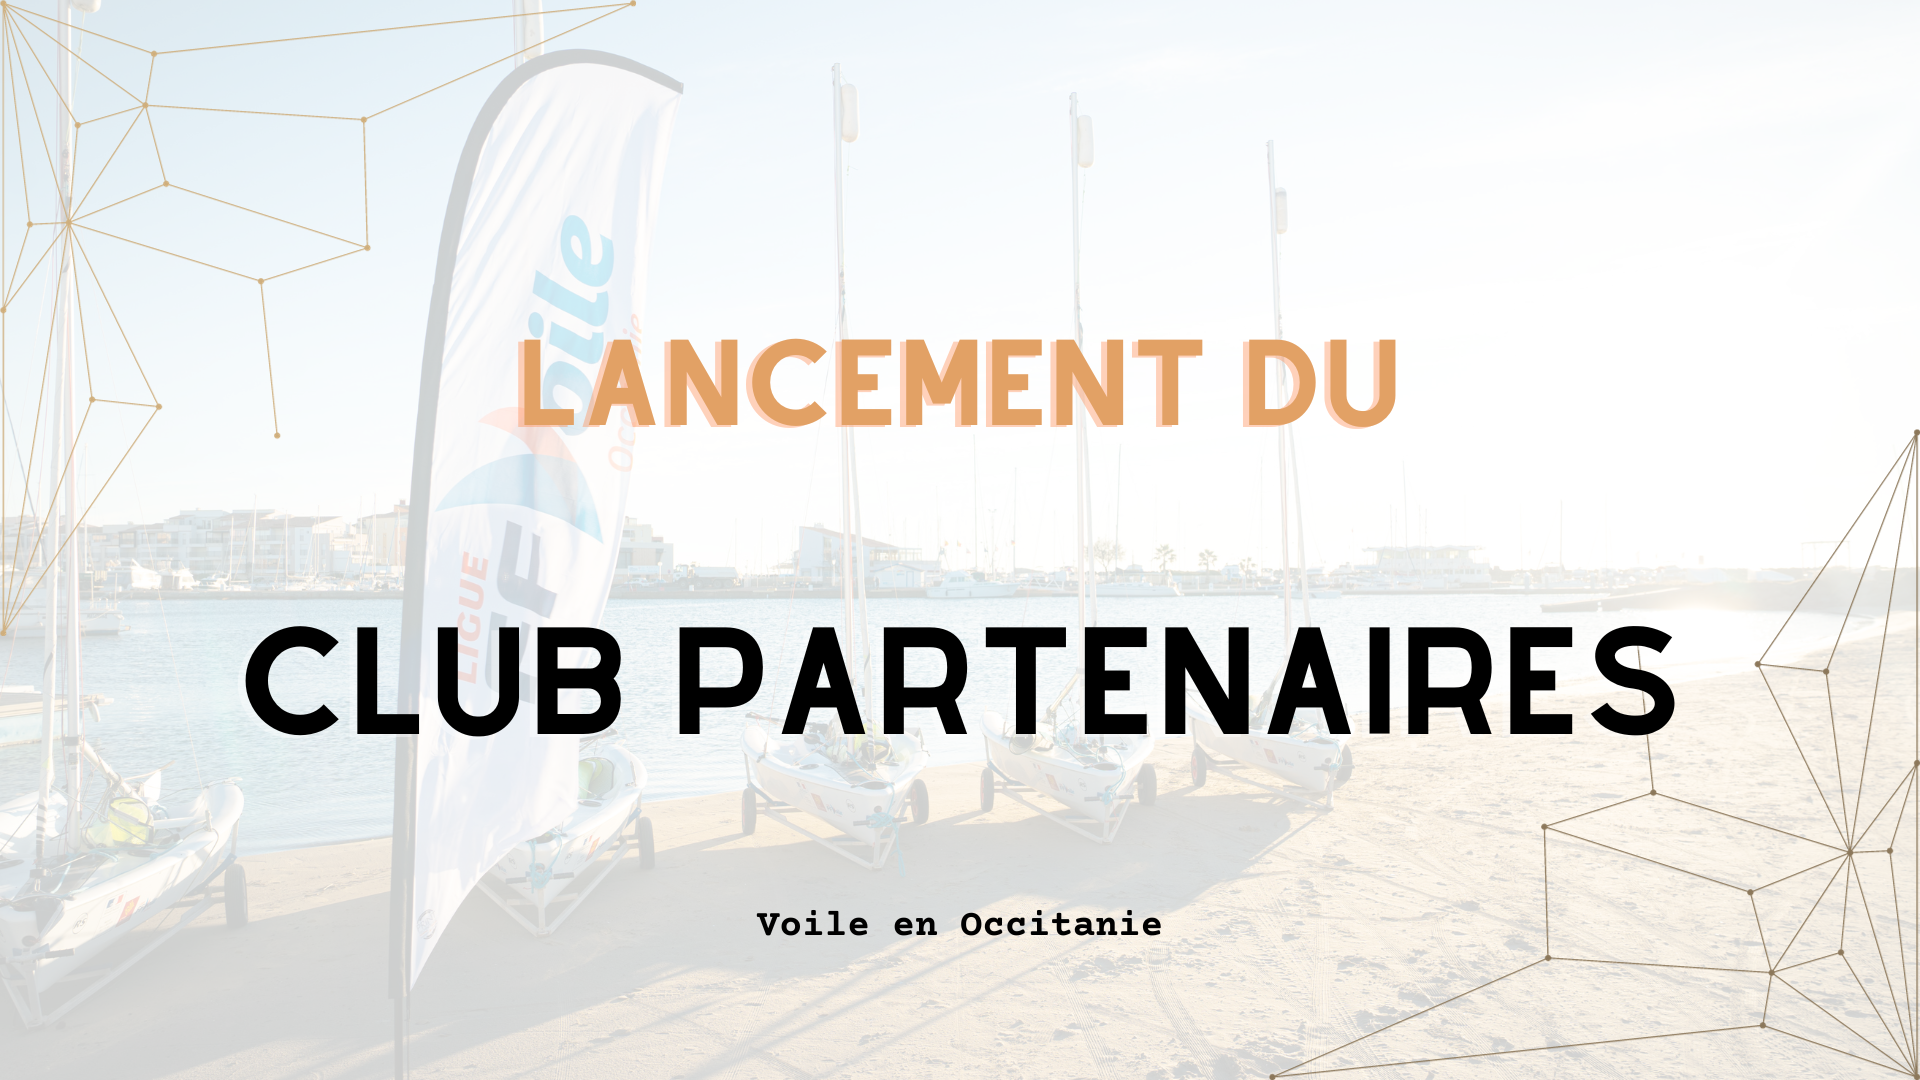 You are currently viewing Lancement du Club Partenaires de la Ligue de Voile Occitanie